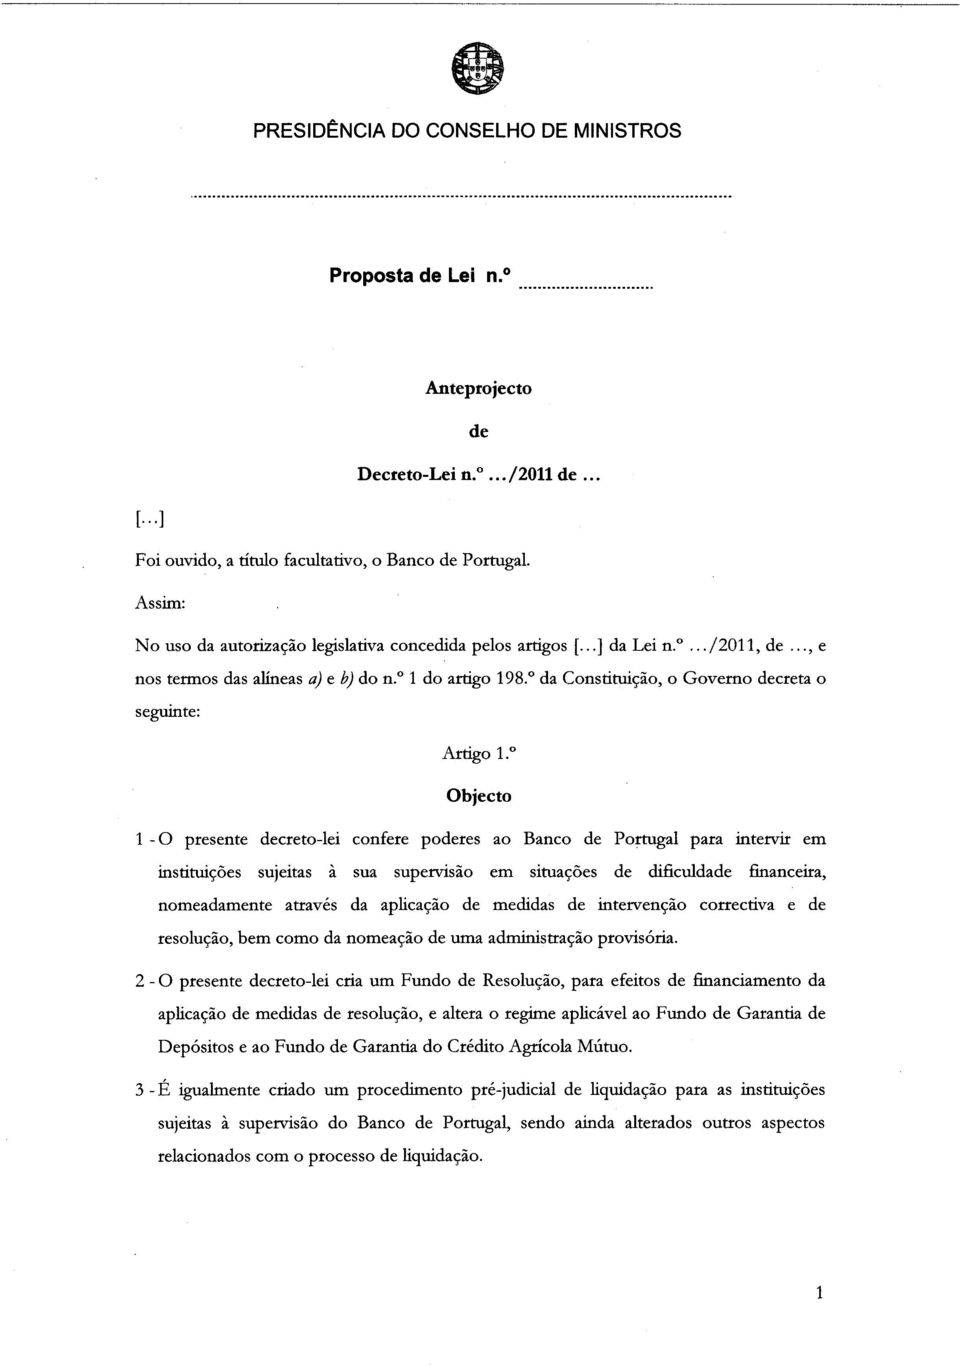 Objecto 1 - O presente decreto-lei confere poderes ao Banco de Portugal para intervir em instituições sujeitas à sua supervisão em situações de dificuldade financeira, nomeadamente através da